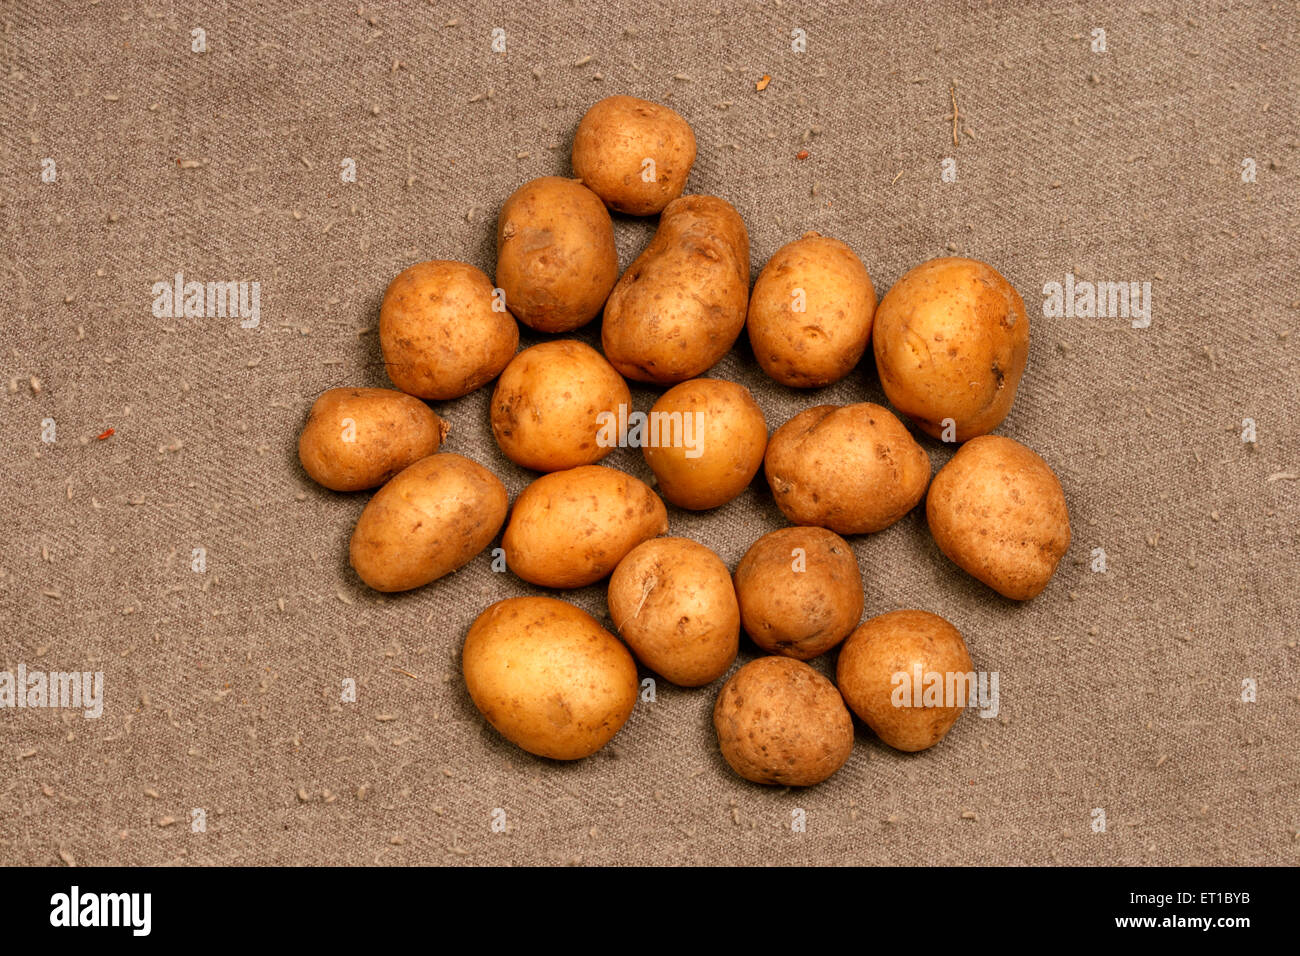 Plan d'examen pour pommes de terre Banque D'Images